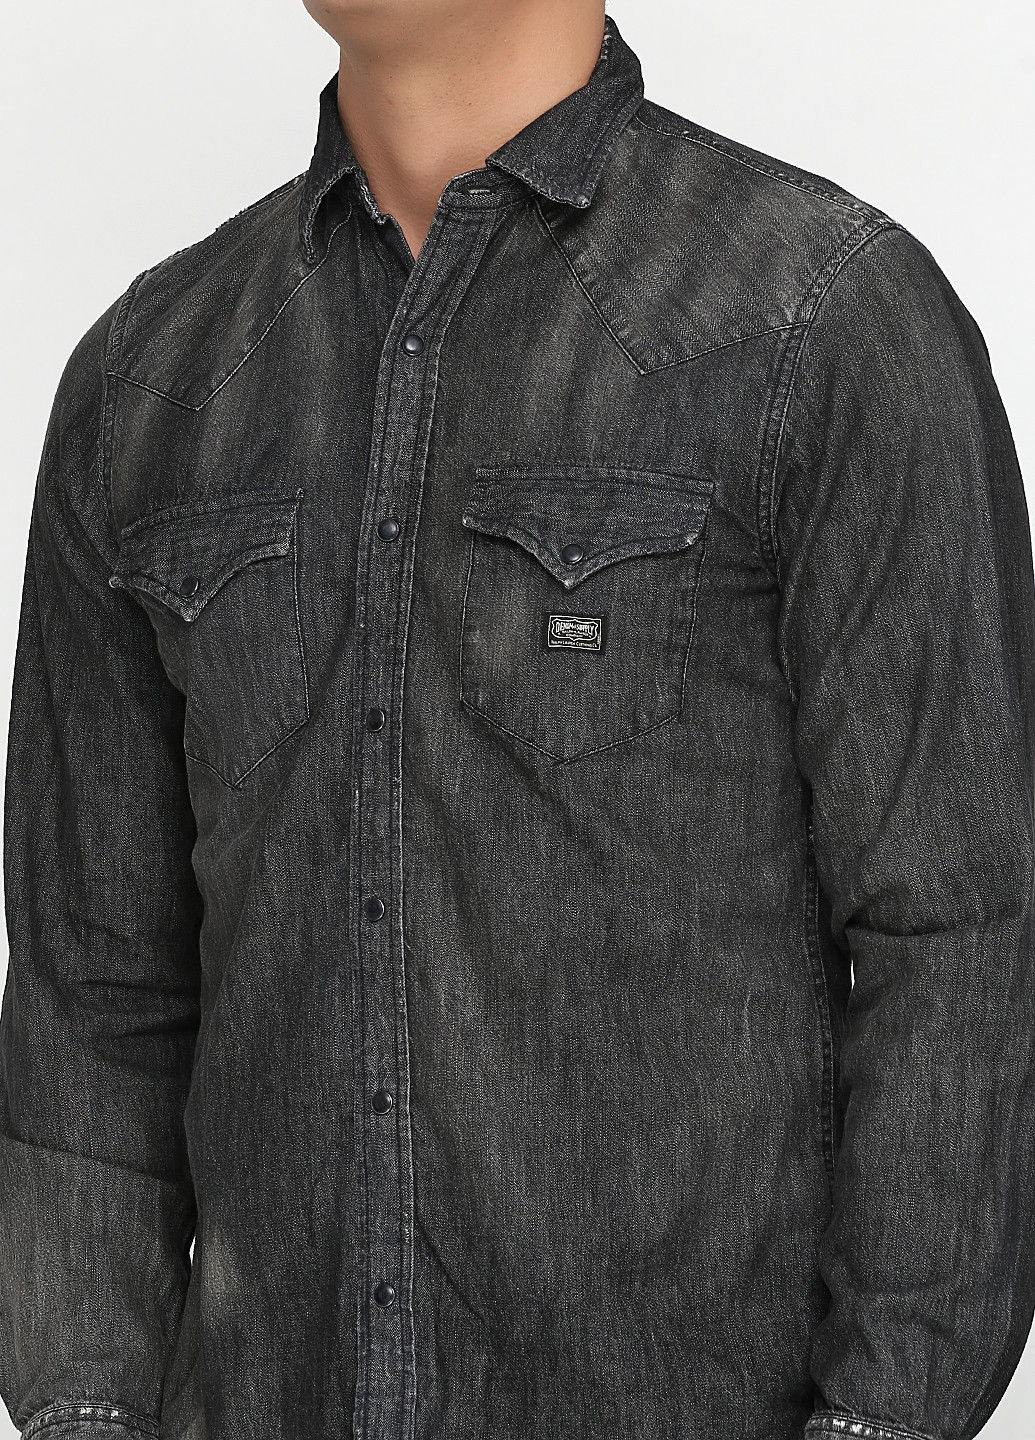 Темно-серая кэжуал рубашка однотонная Ralph Lauren с длинным рукавом